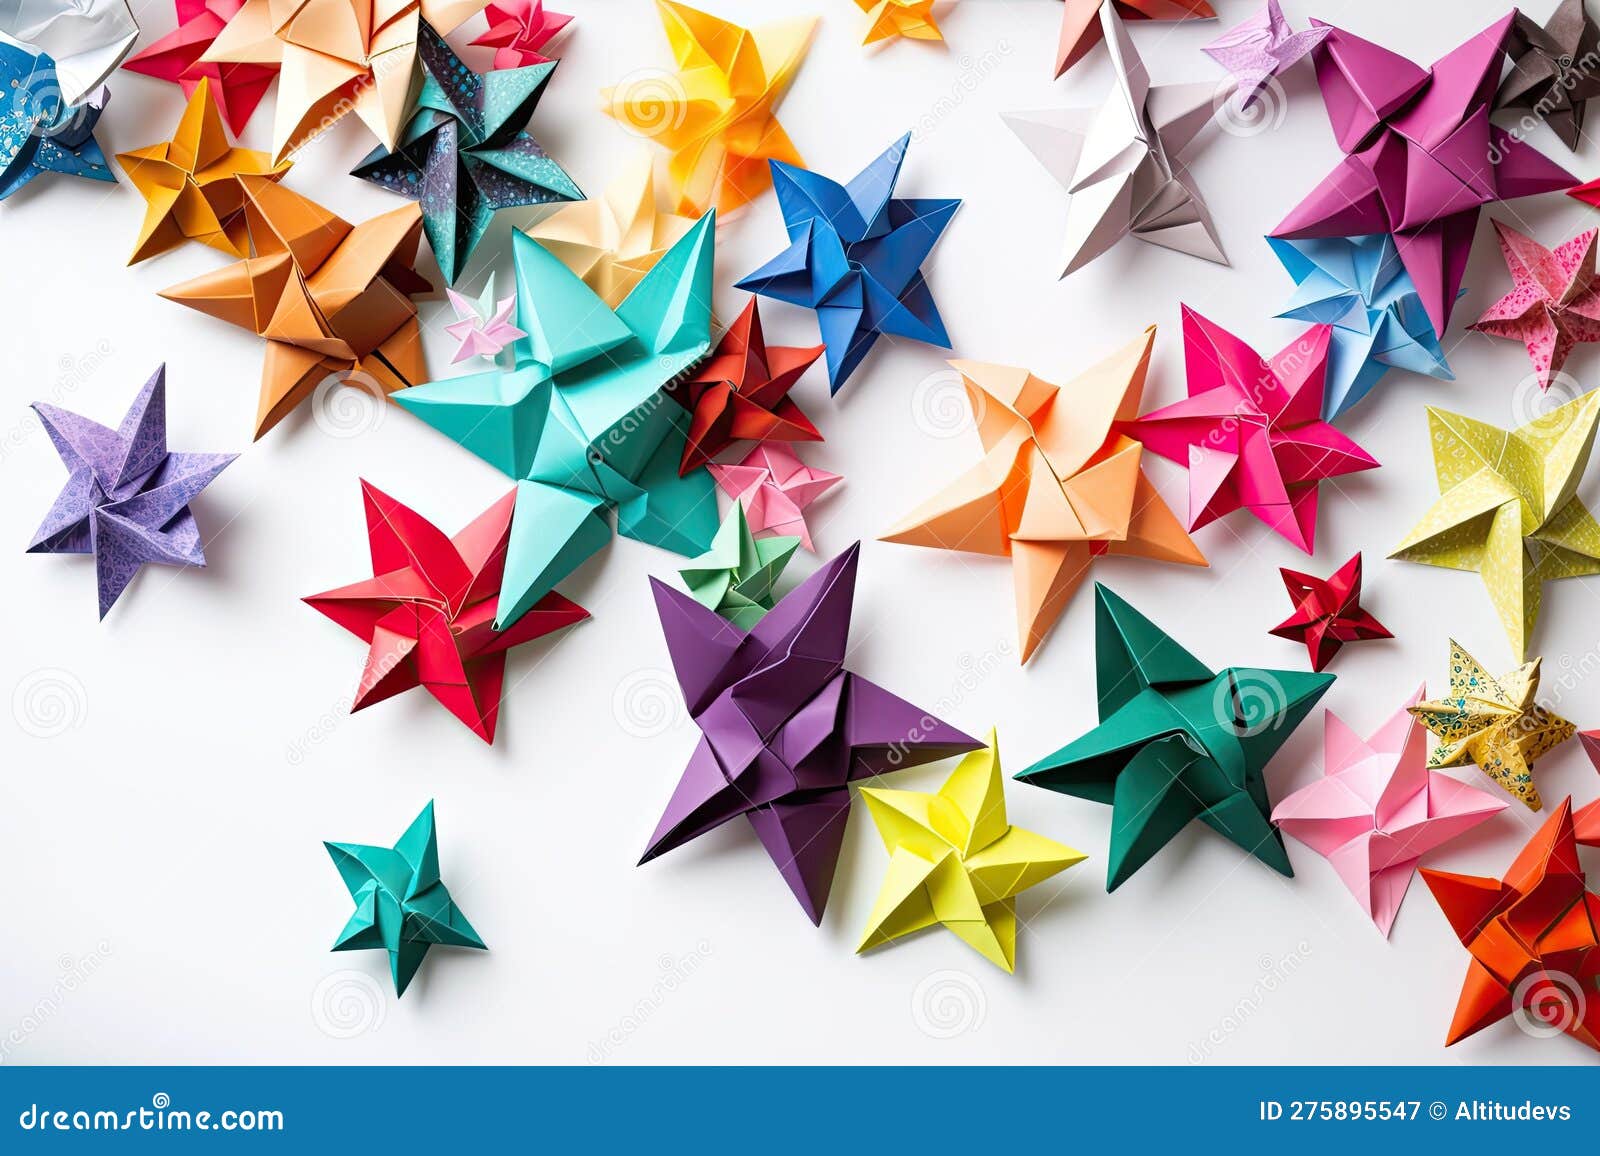 Collezione Di Stelle Di Carta Di Origami Di Dimensioni E Colori Diversi  Illustrazione di Stock - Illustrazione di celebrazione, piegato: 275895547